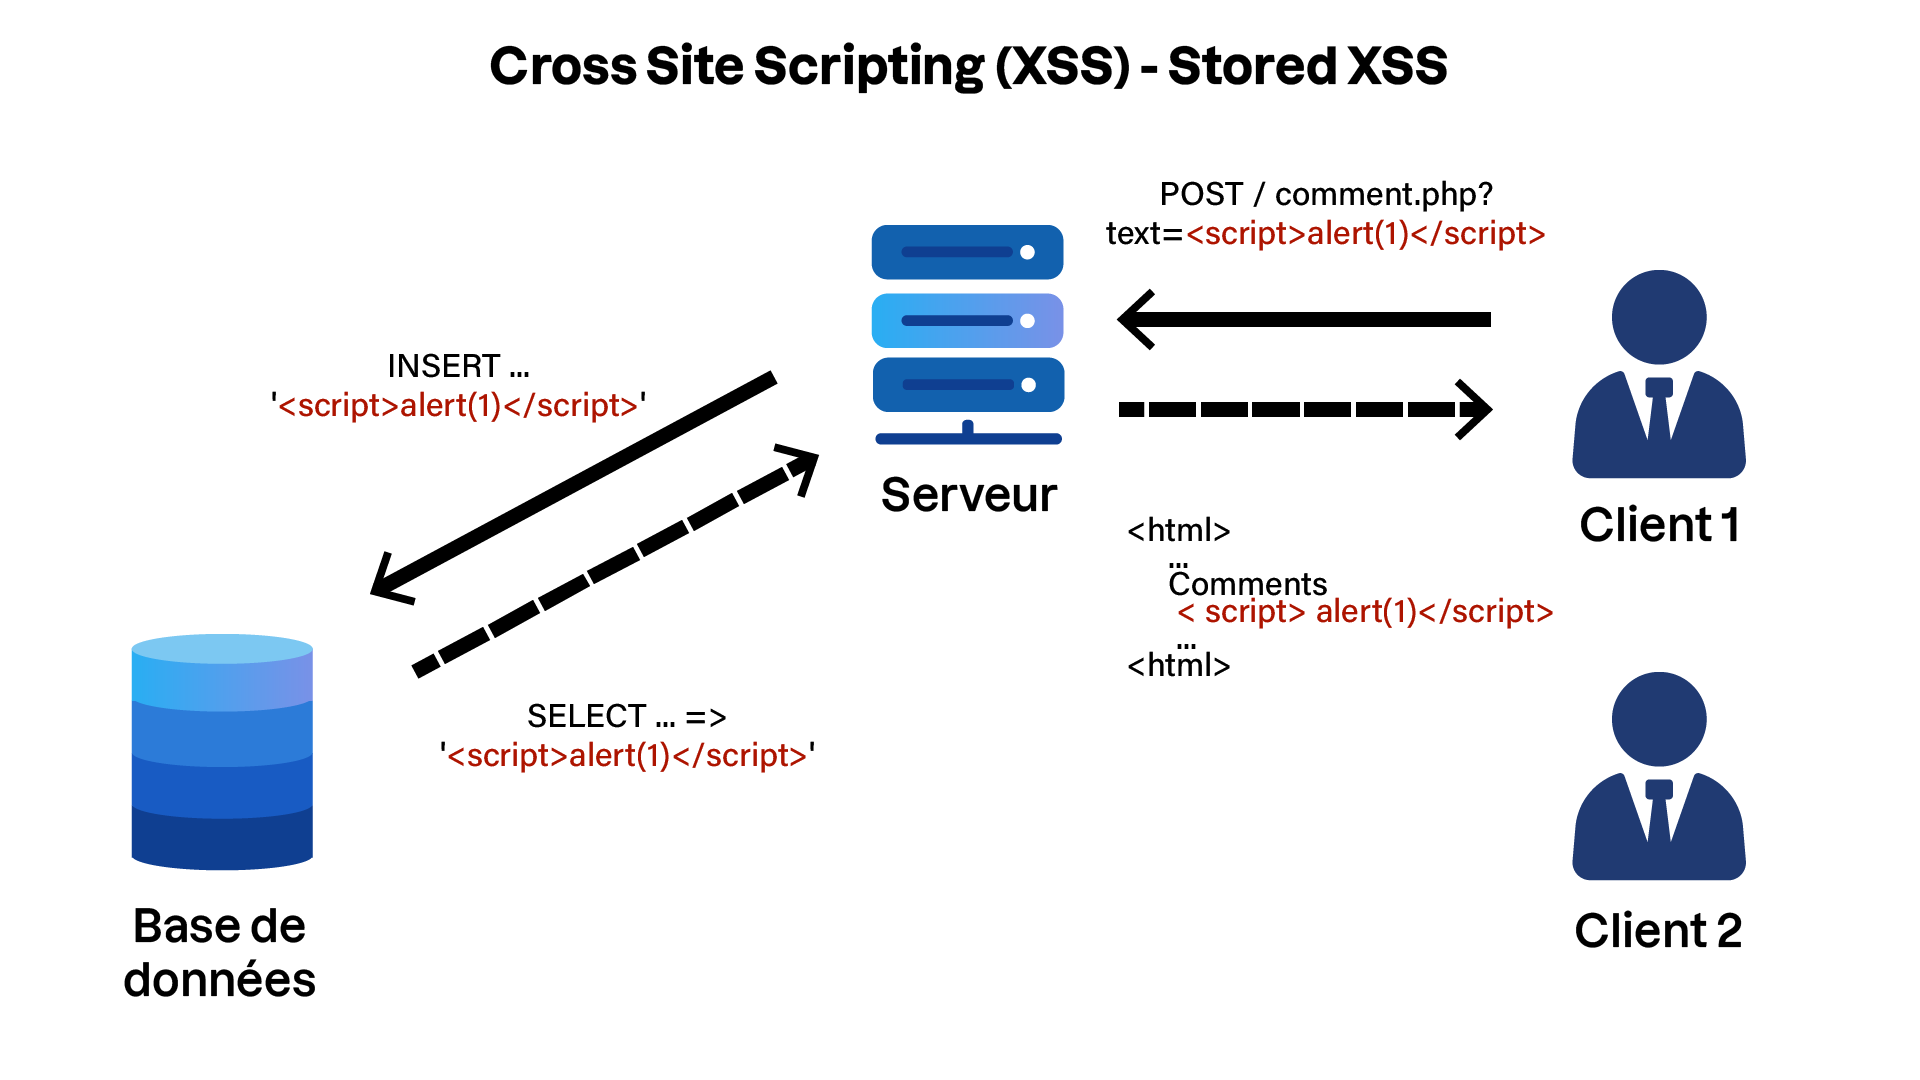 Le schéma illustre un exemple de Cross Site Scripting (XSS) de type Stored où un script malveillant est inséré dans une base de données et est ensuite exécuté sur les clients lorsqu'ils récupèrent les données du serveur.